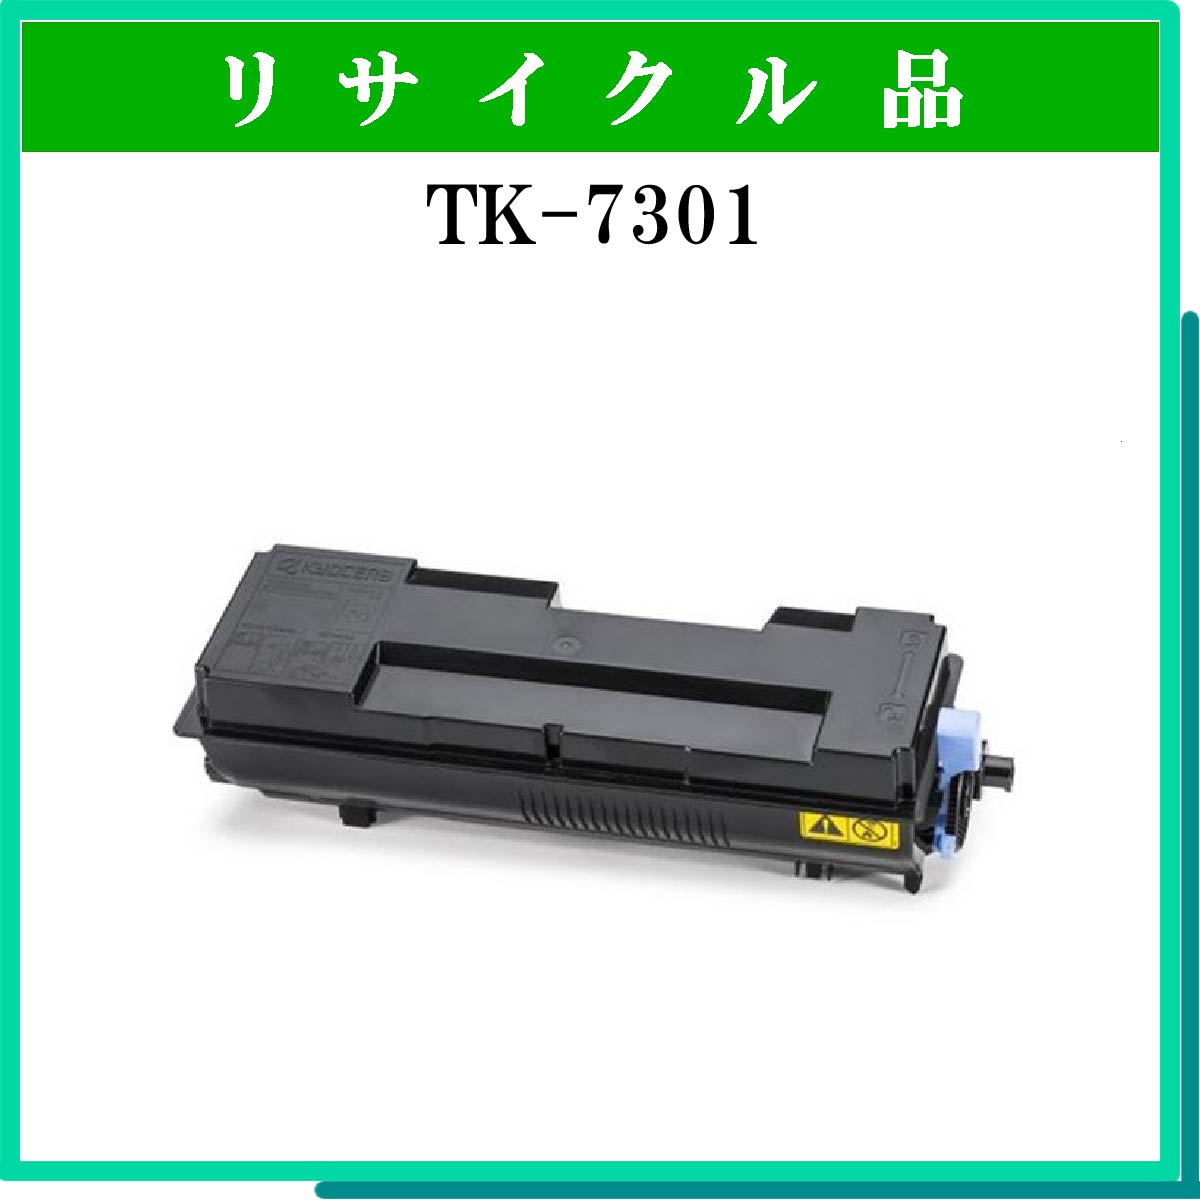 TK-7301